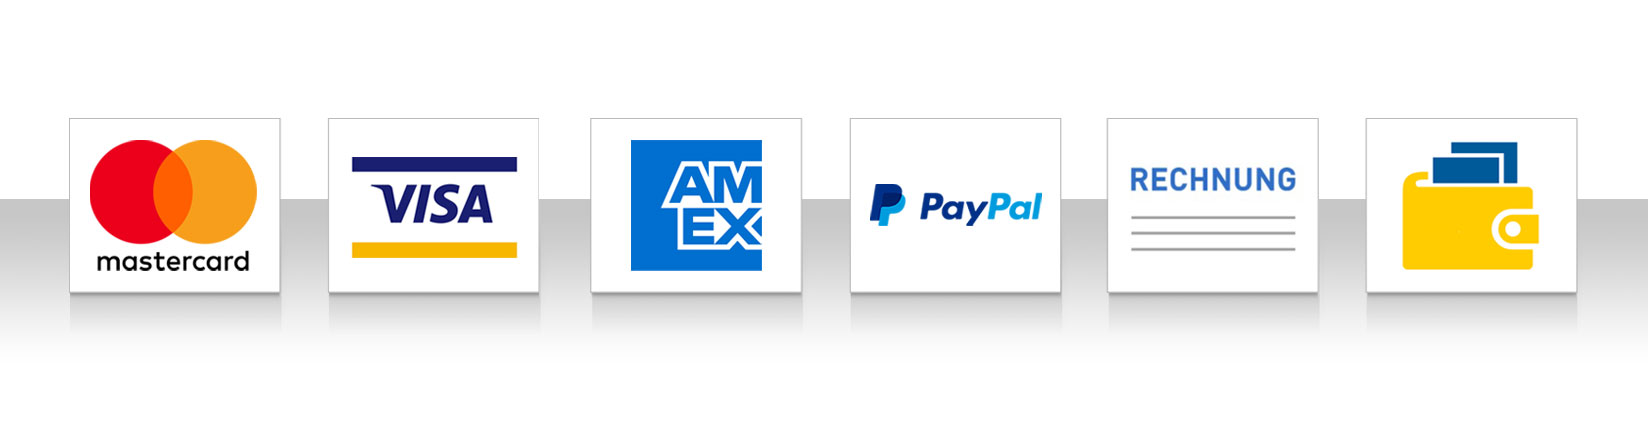 Zahlungsarten von Bürklin Elektronik: Kreditkarte, Rechnung, Paypal, Barzahlung bei Abholung